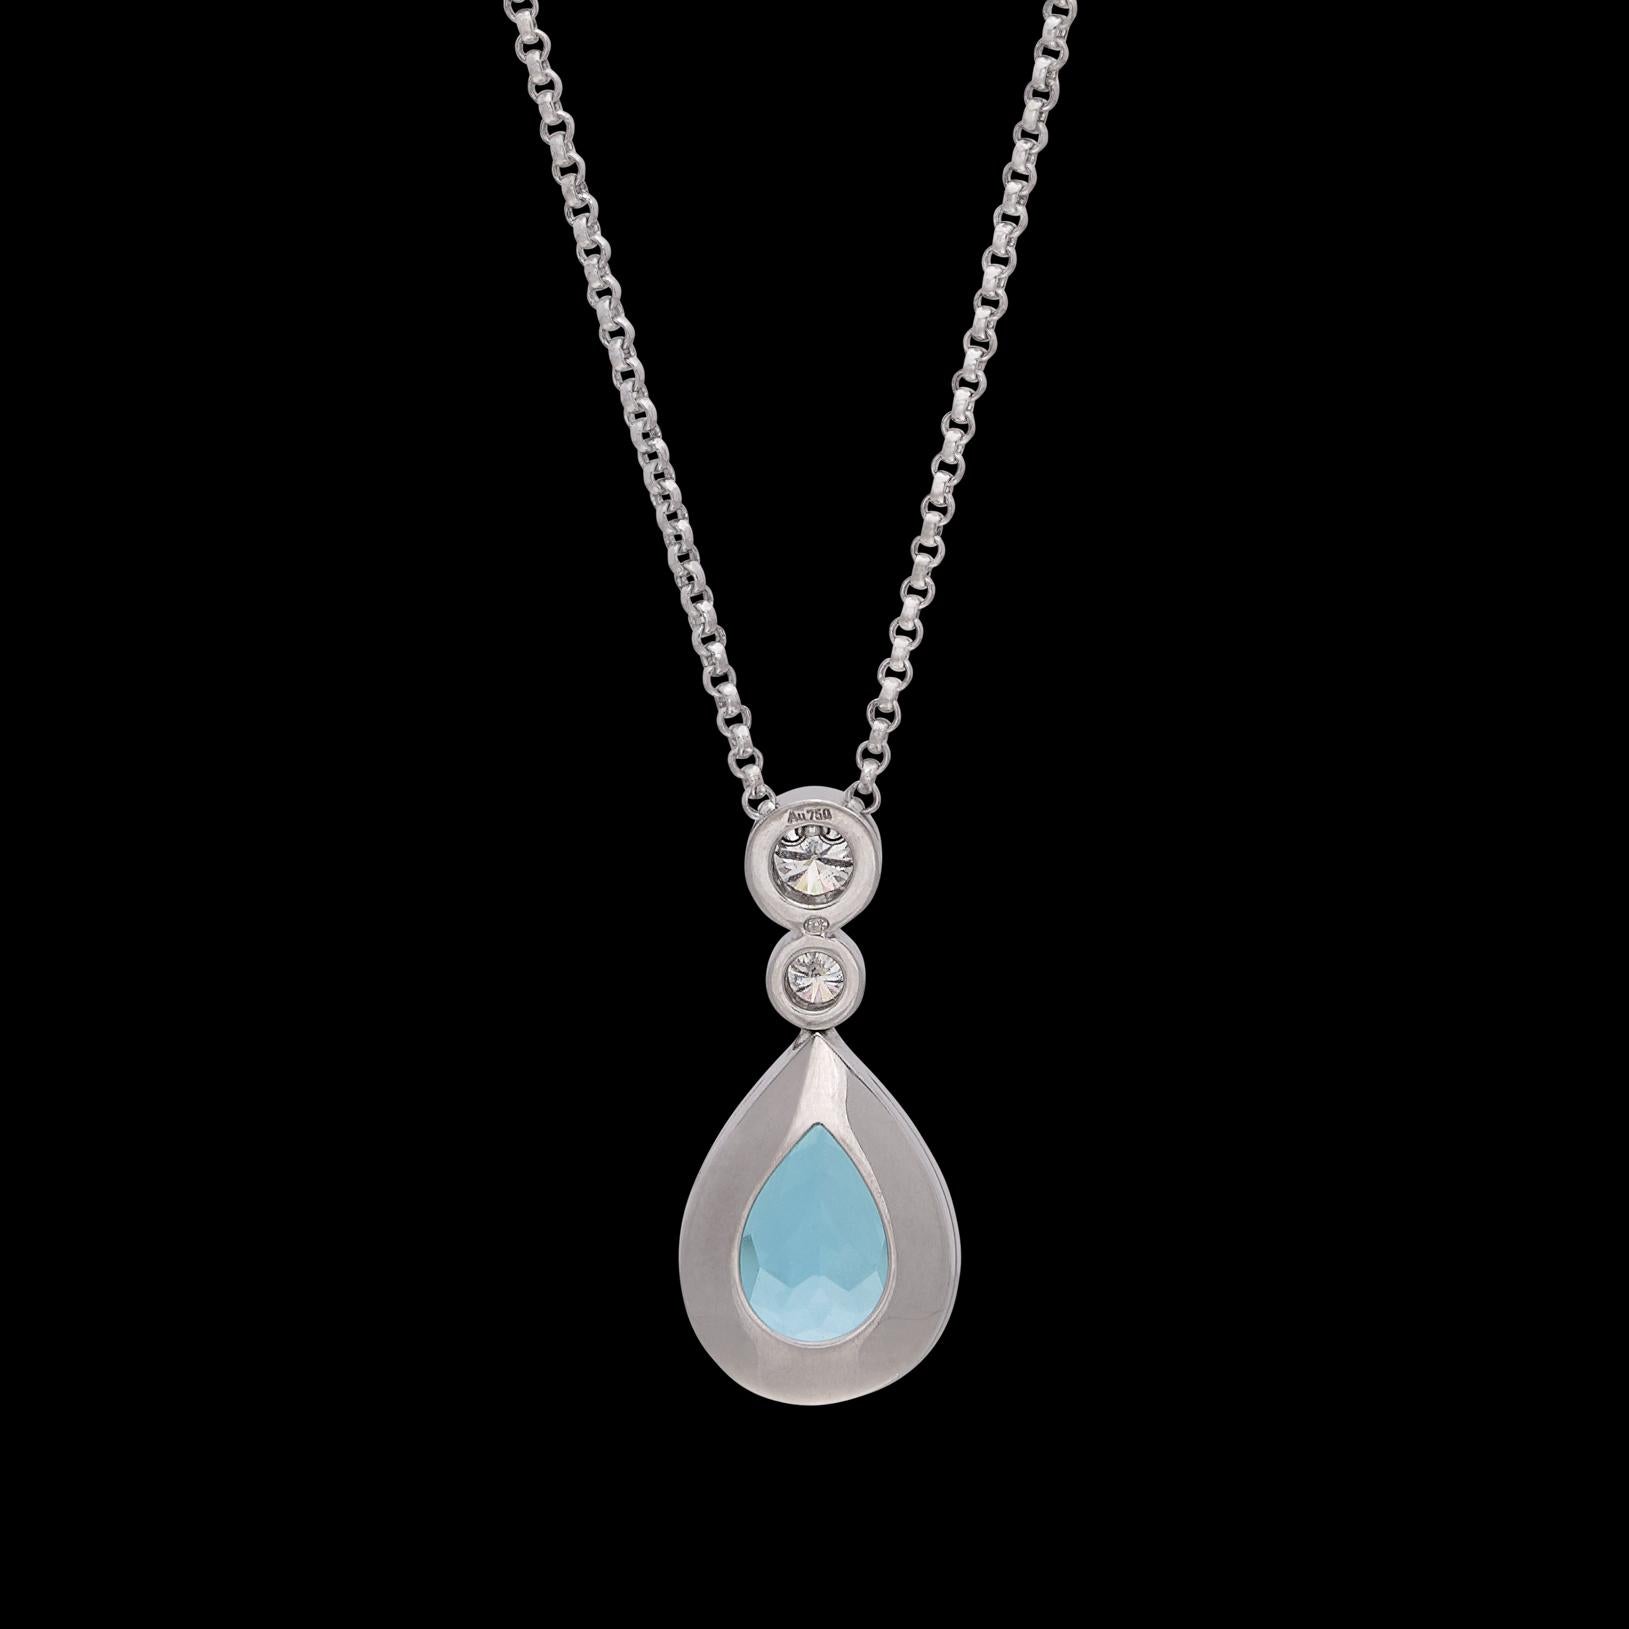 Women's Aquamarine & Diamond Necklace by Hans D. Krieger